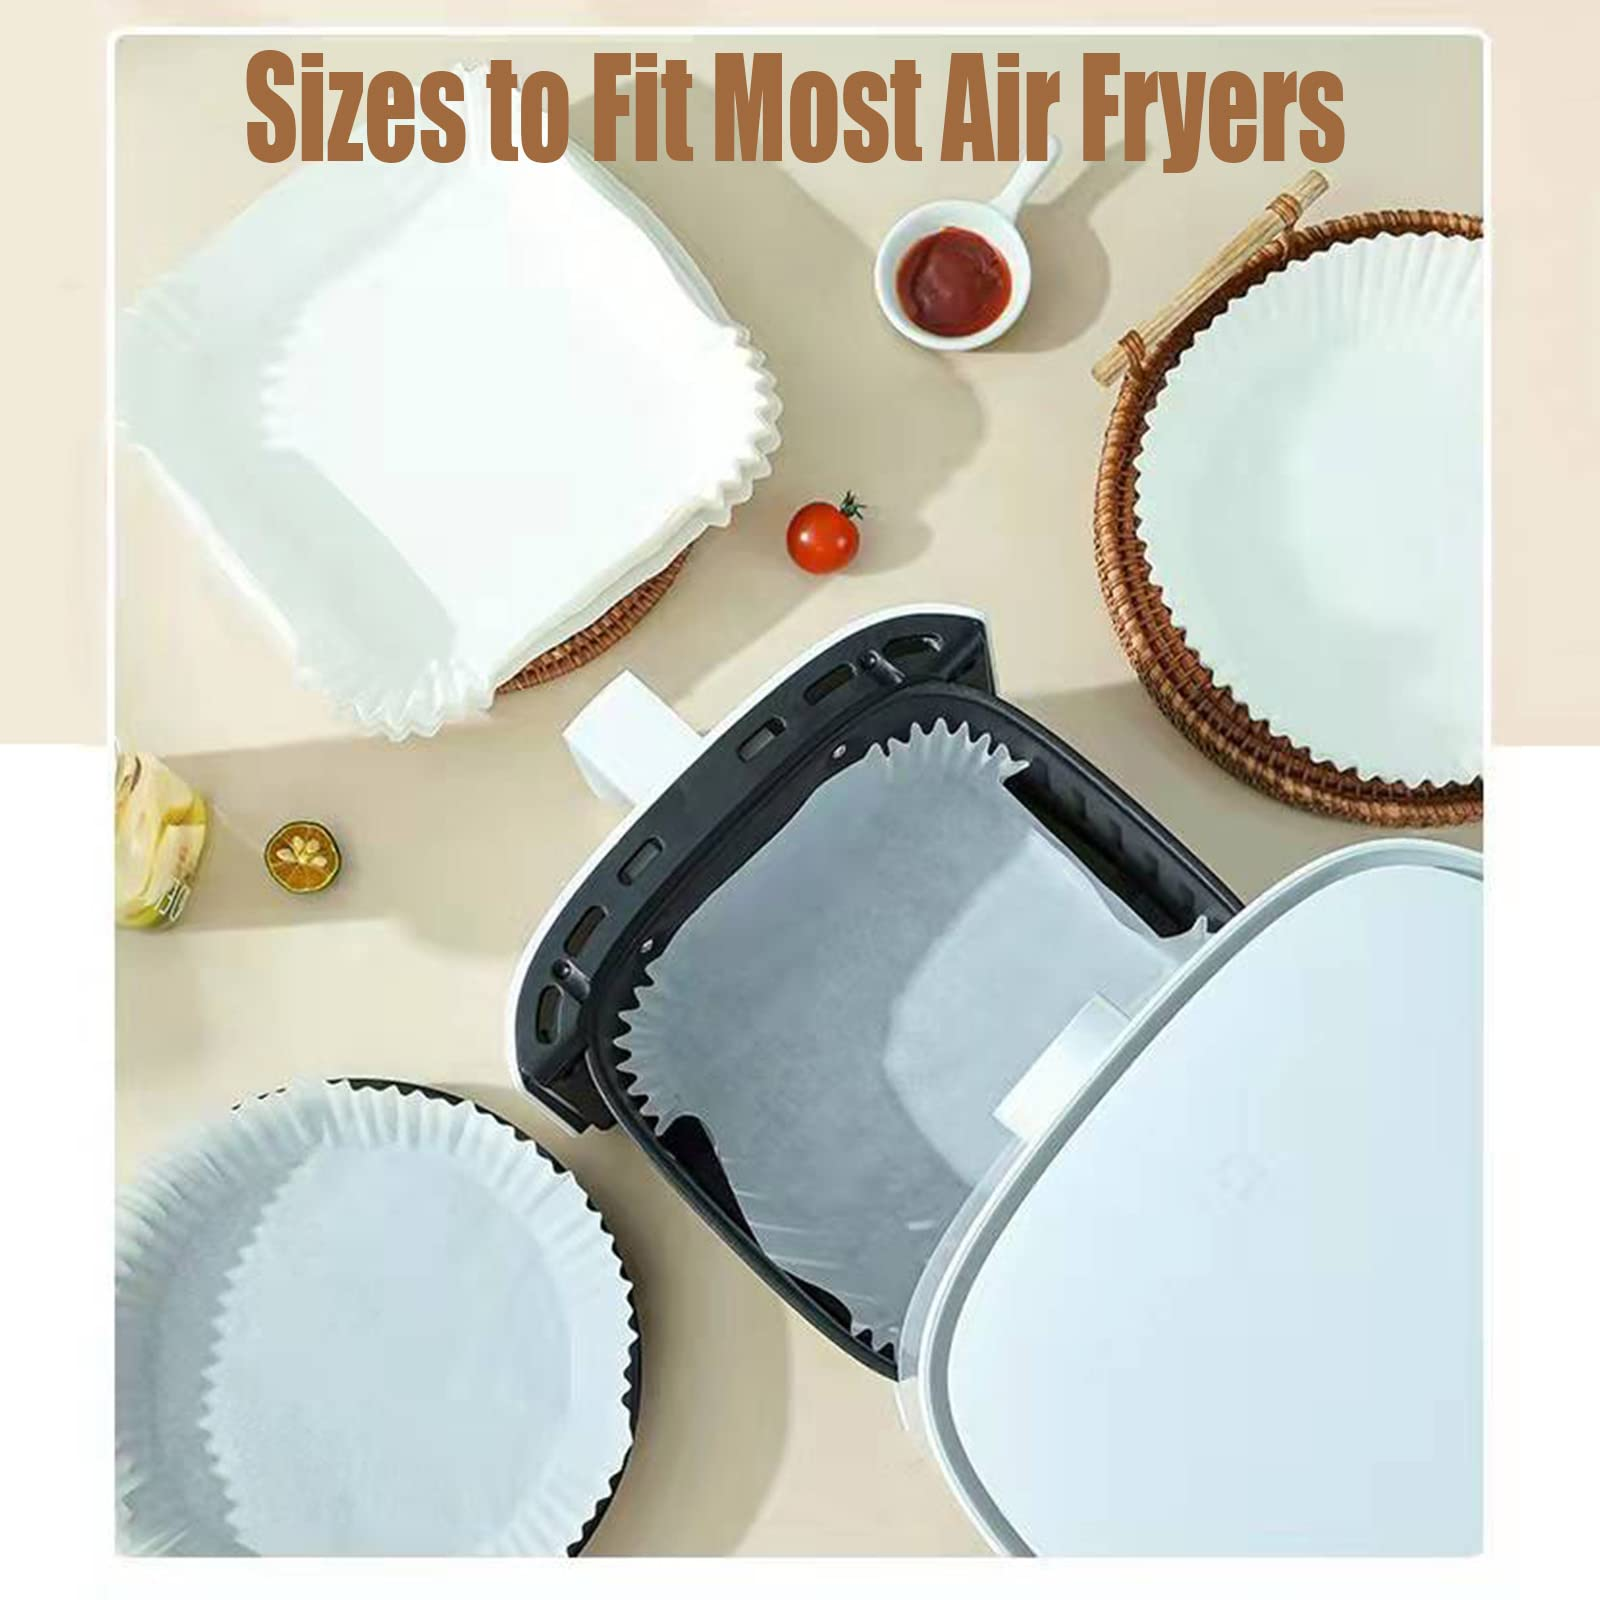 100 Luftfritteusen-Papiereinlagen Fryer für Fritteusen Einwegpapier INF Griff Air Stk mit